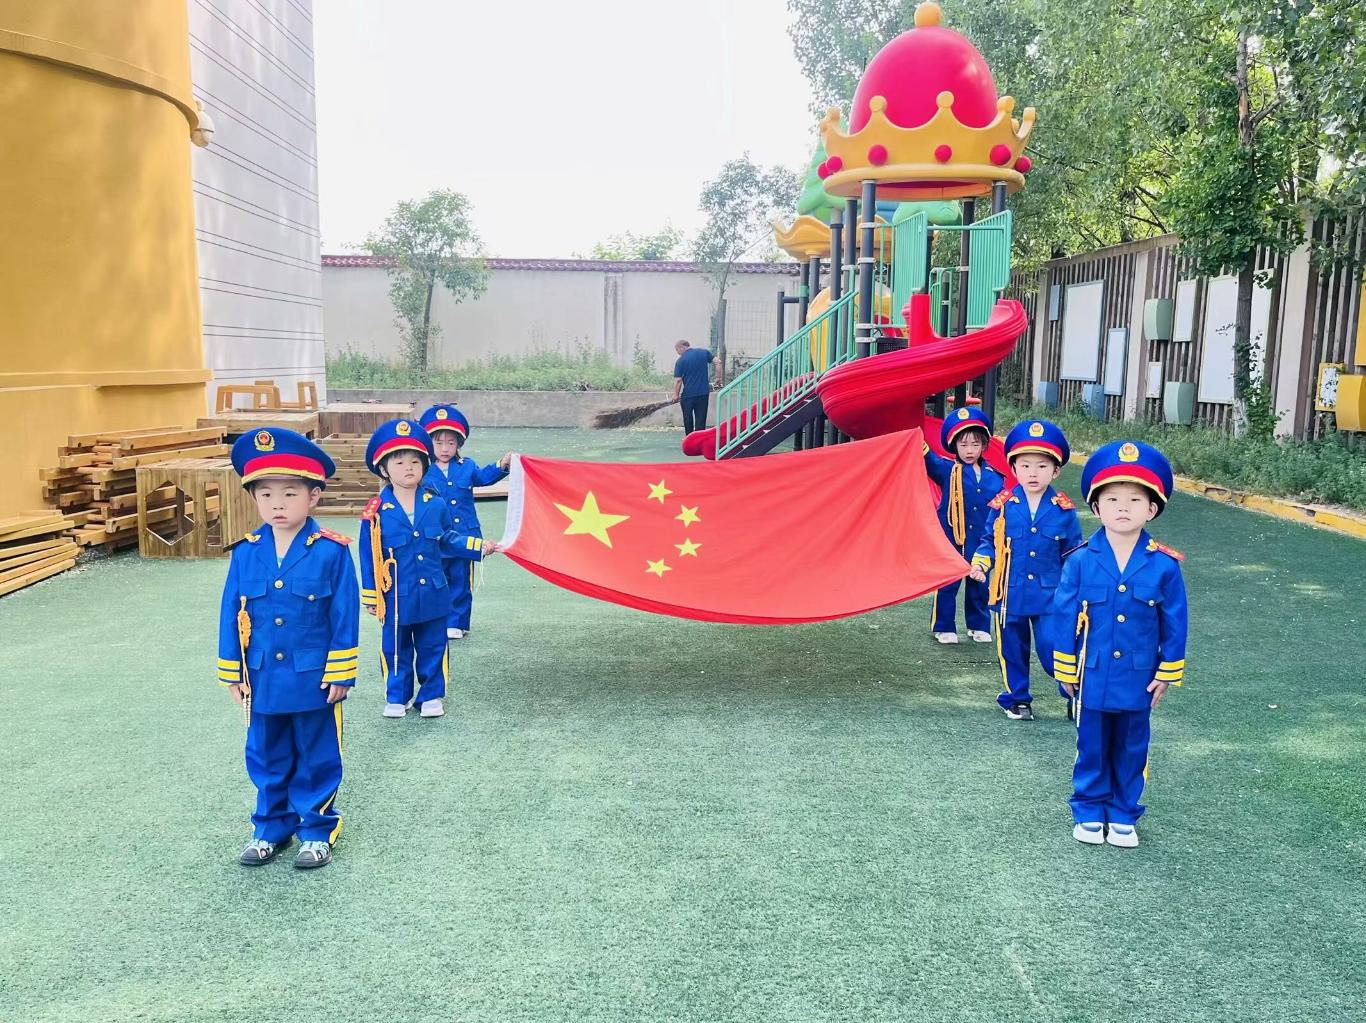 灞桥区狄寨街道第三幼儿园第十三周升旗仪式